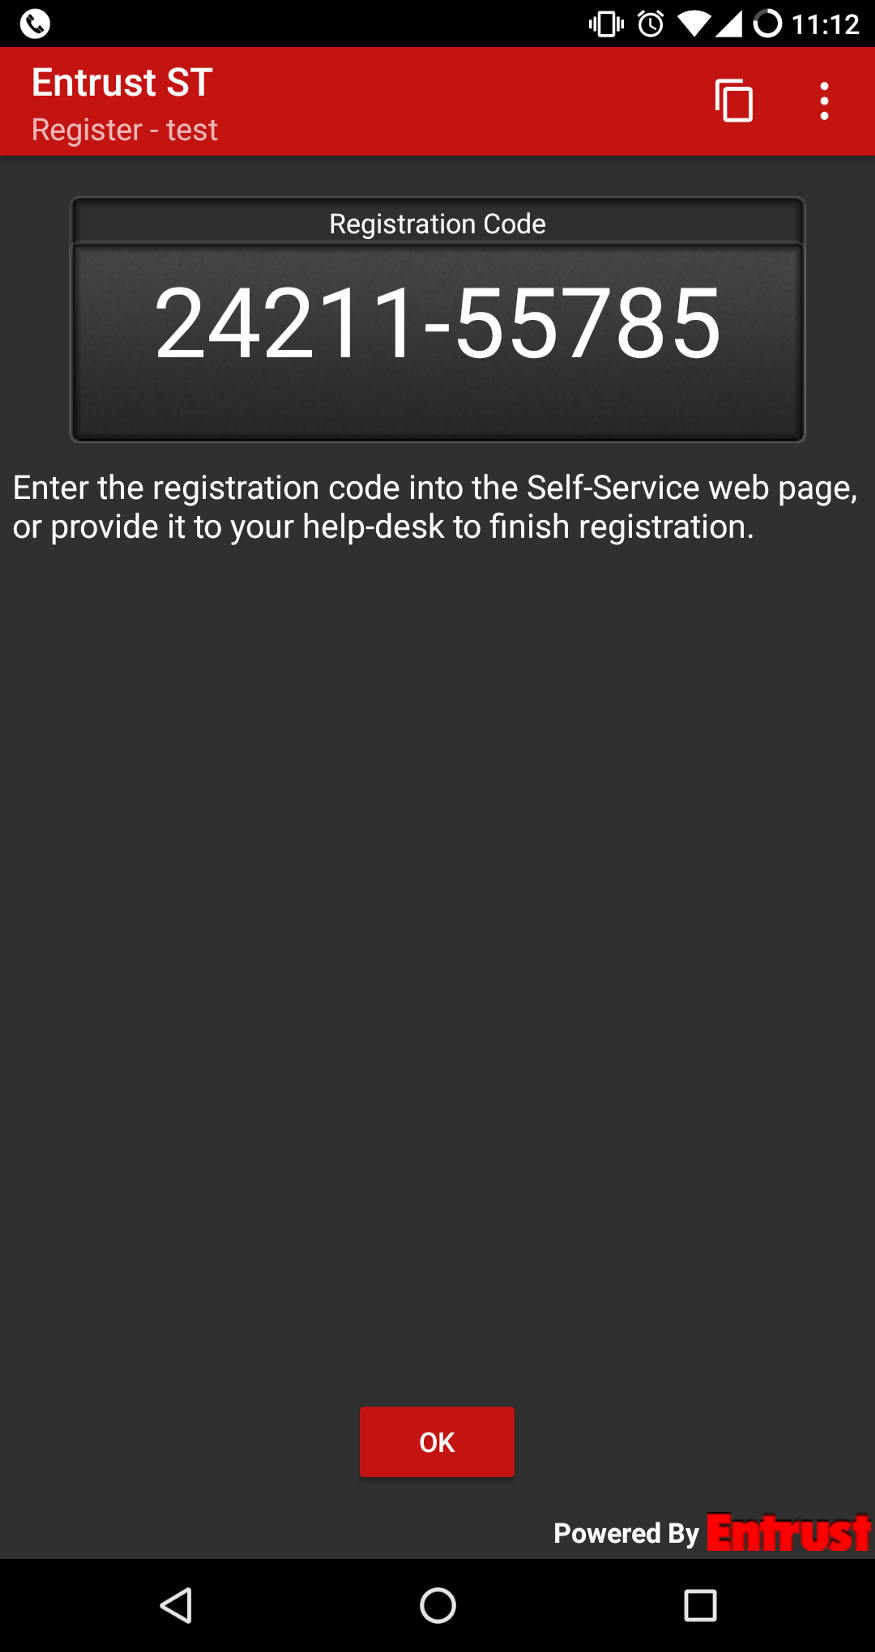 Screenshot of Entrust mobile application showing a Registation Code